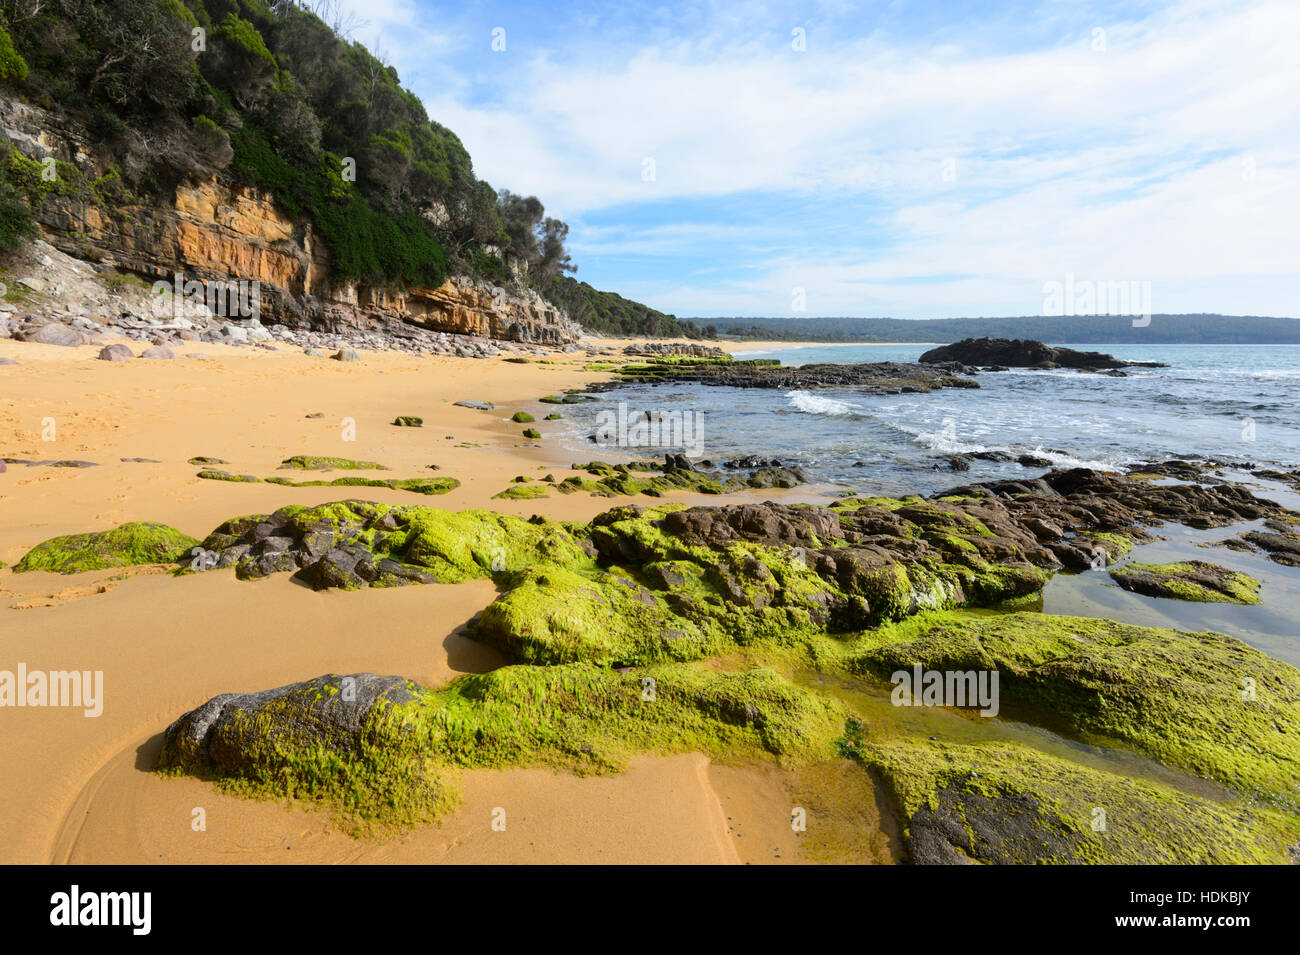 Formations rocheuses couvertes d'algues vertes en près de la piscine dans les rochers, Aslings Beach, Eden, Côte Sud, New South Wales, NSW, Australie Banque D'Images